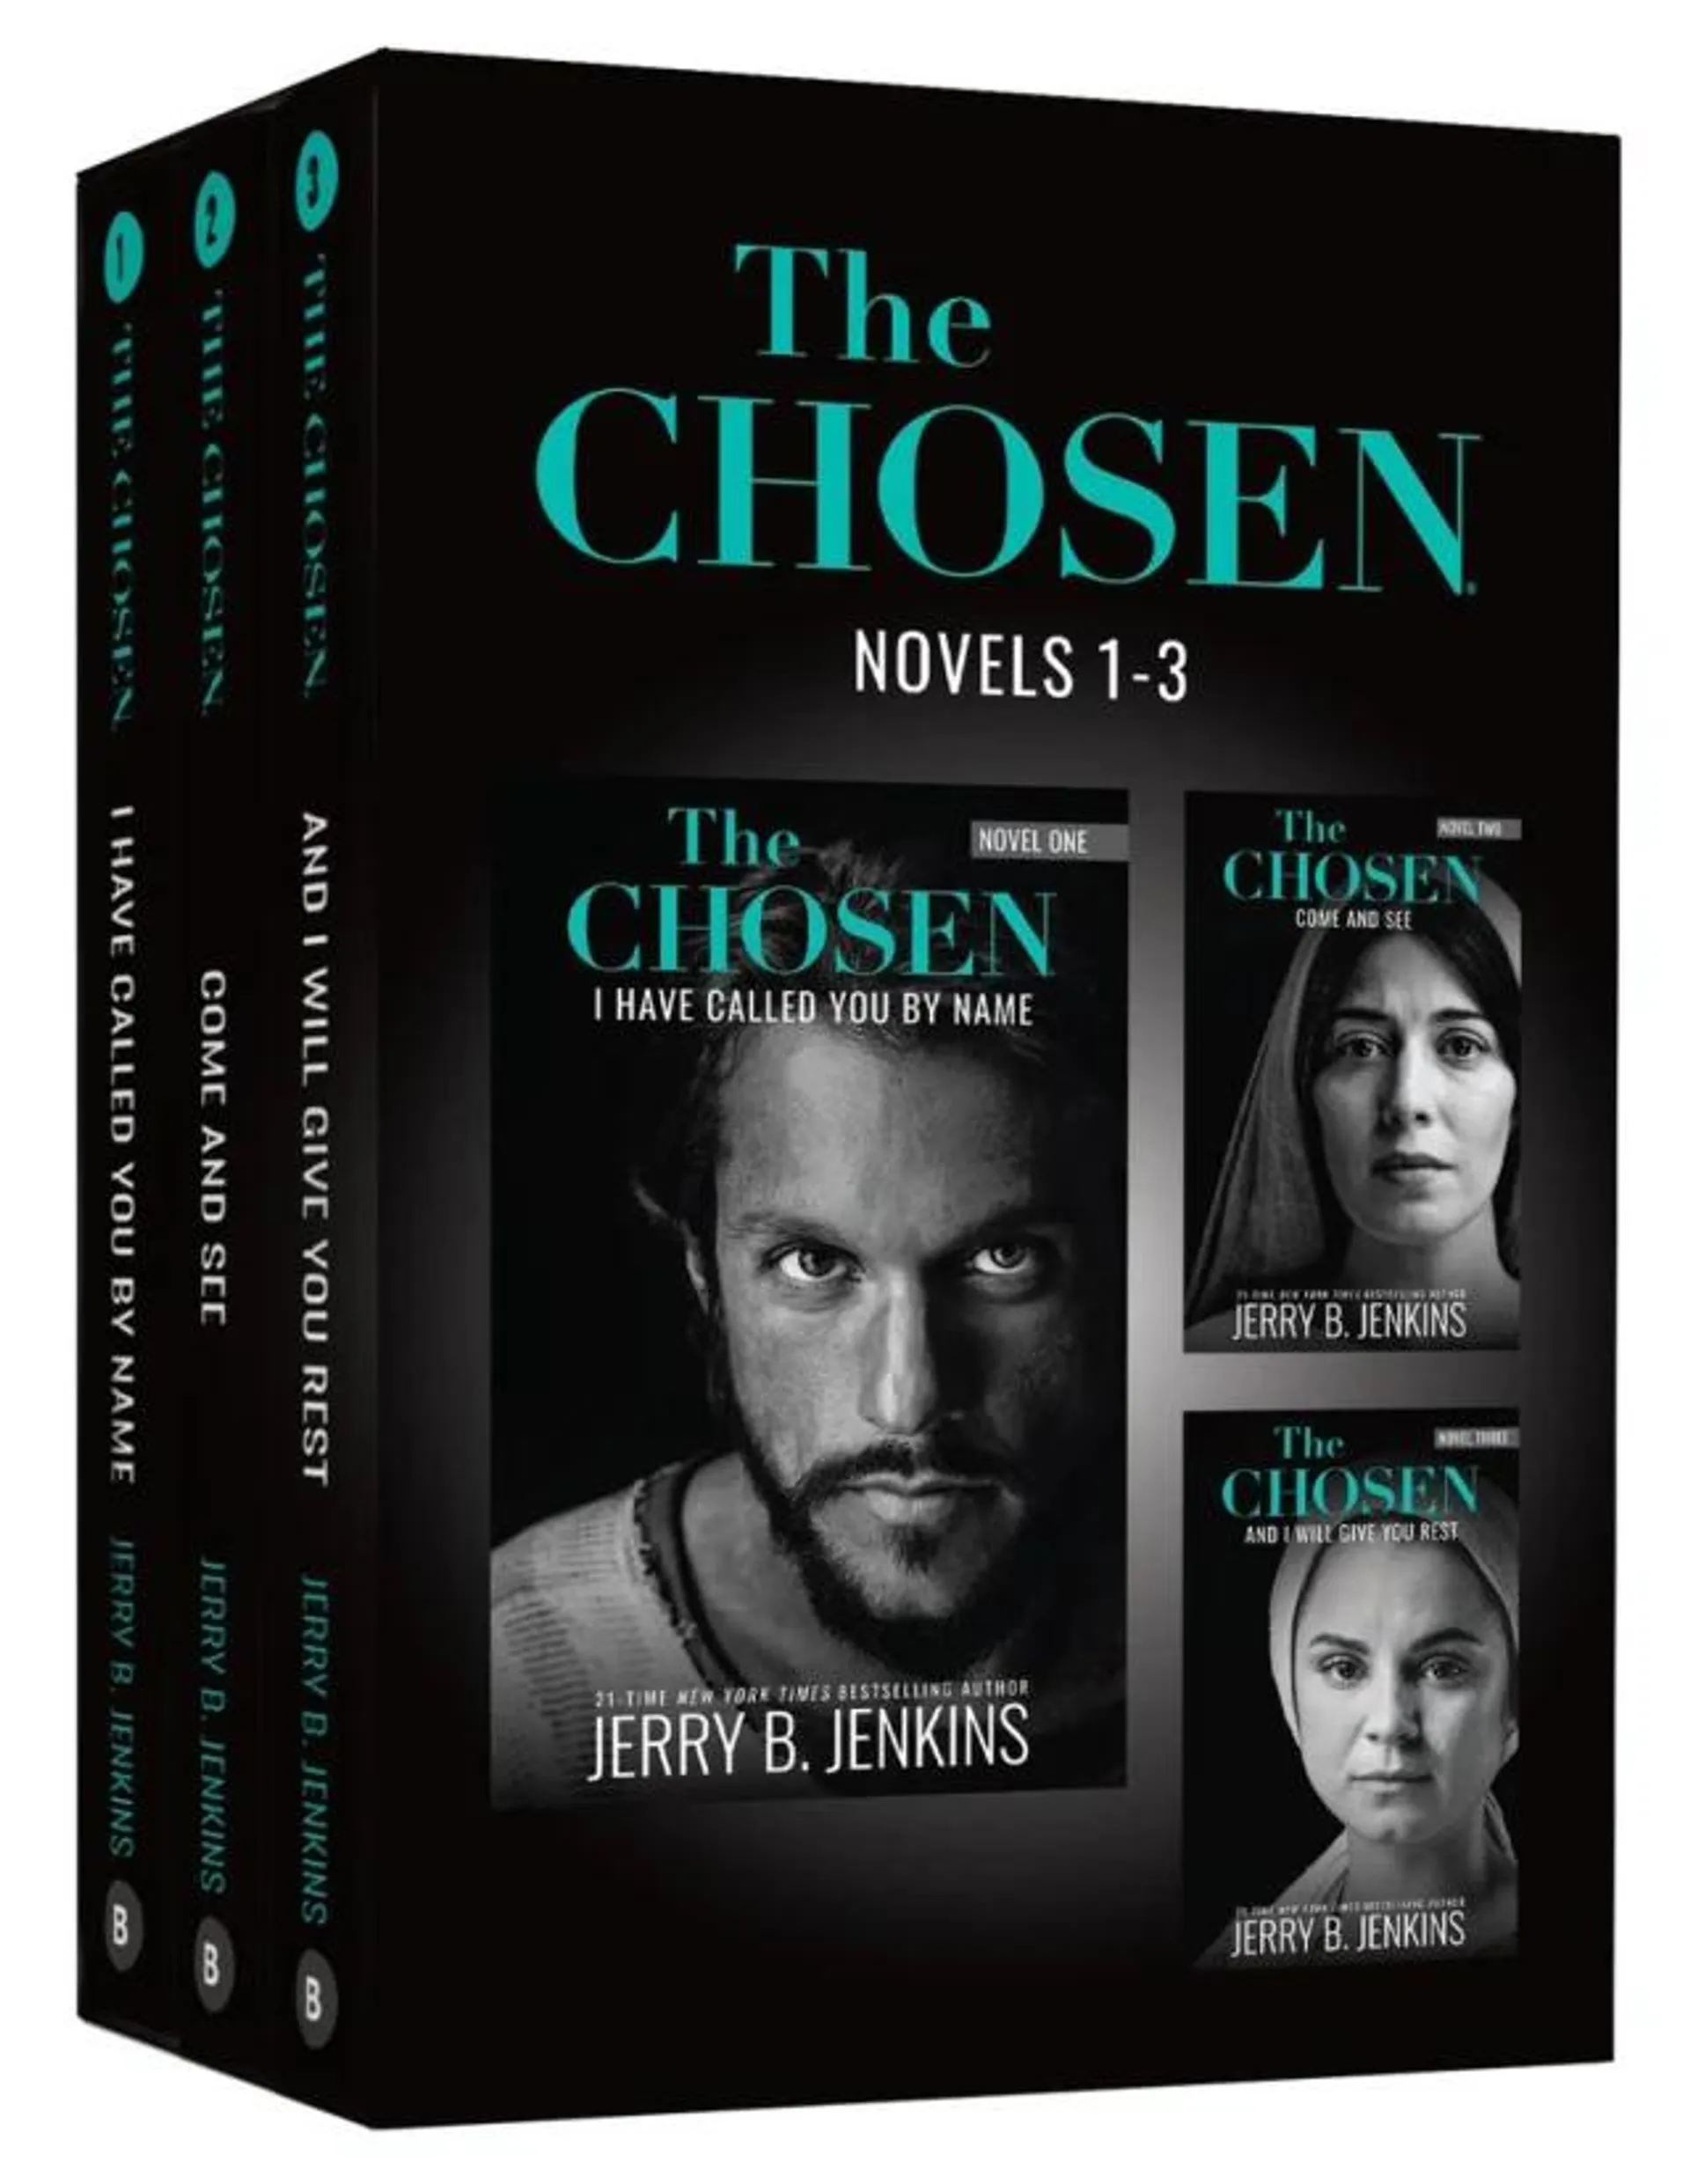 The Chosen 3 Book Set, Novels 1-3 (The Chosen Series)